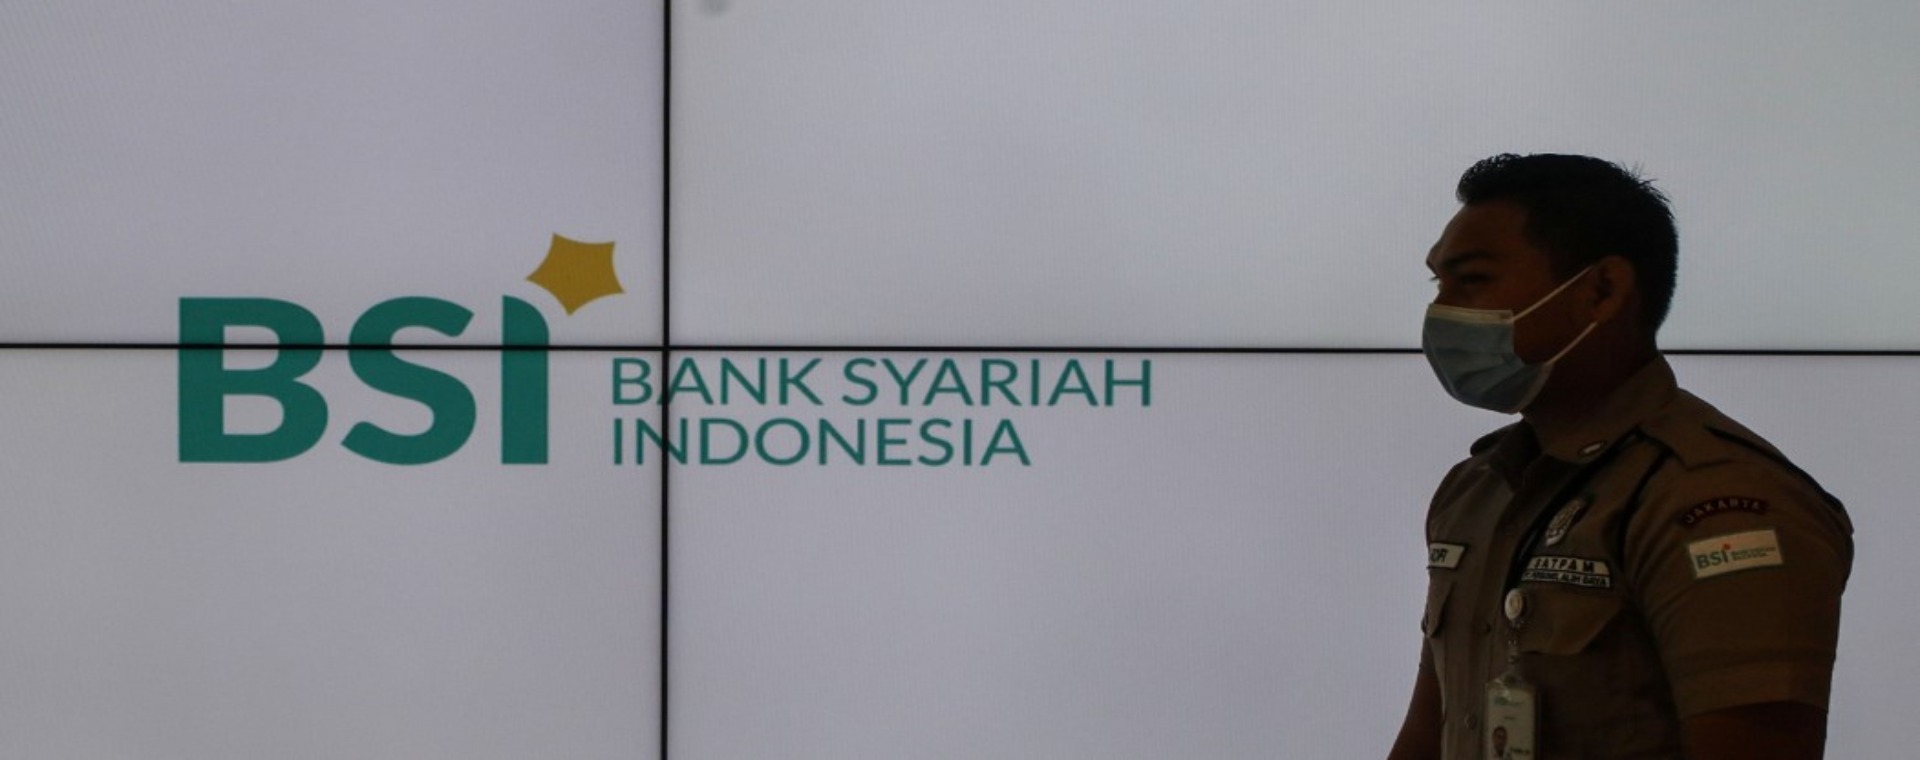 Karyawan beraktivitas di salah satu kantor cabang Bank Syariah Indonesia di Jakarta, Rabu (1/9/2021). - Bisnis/Eusebio Chrysnamurti.